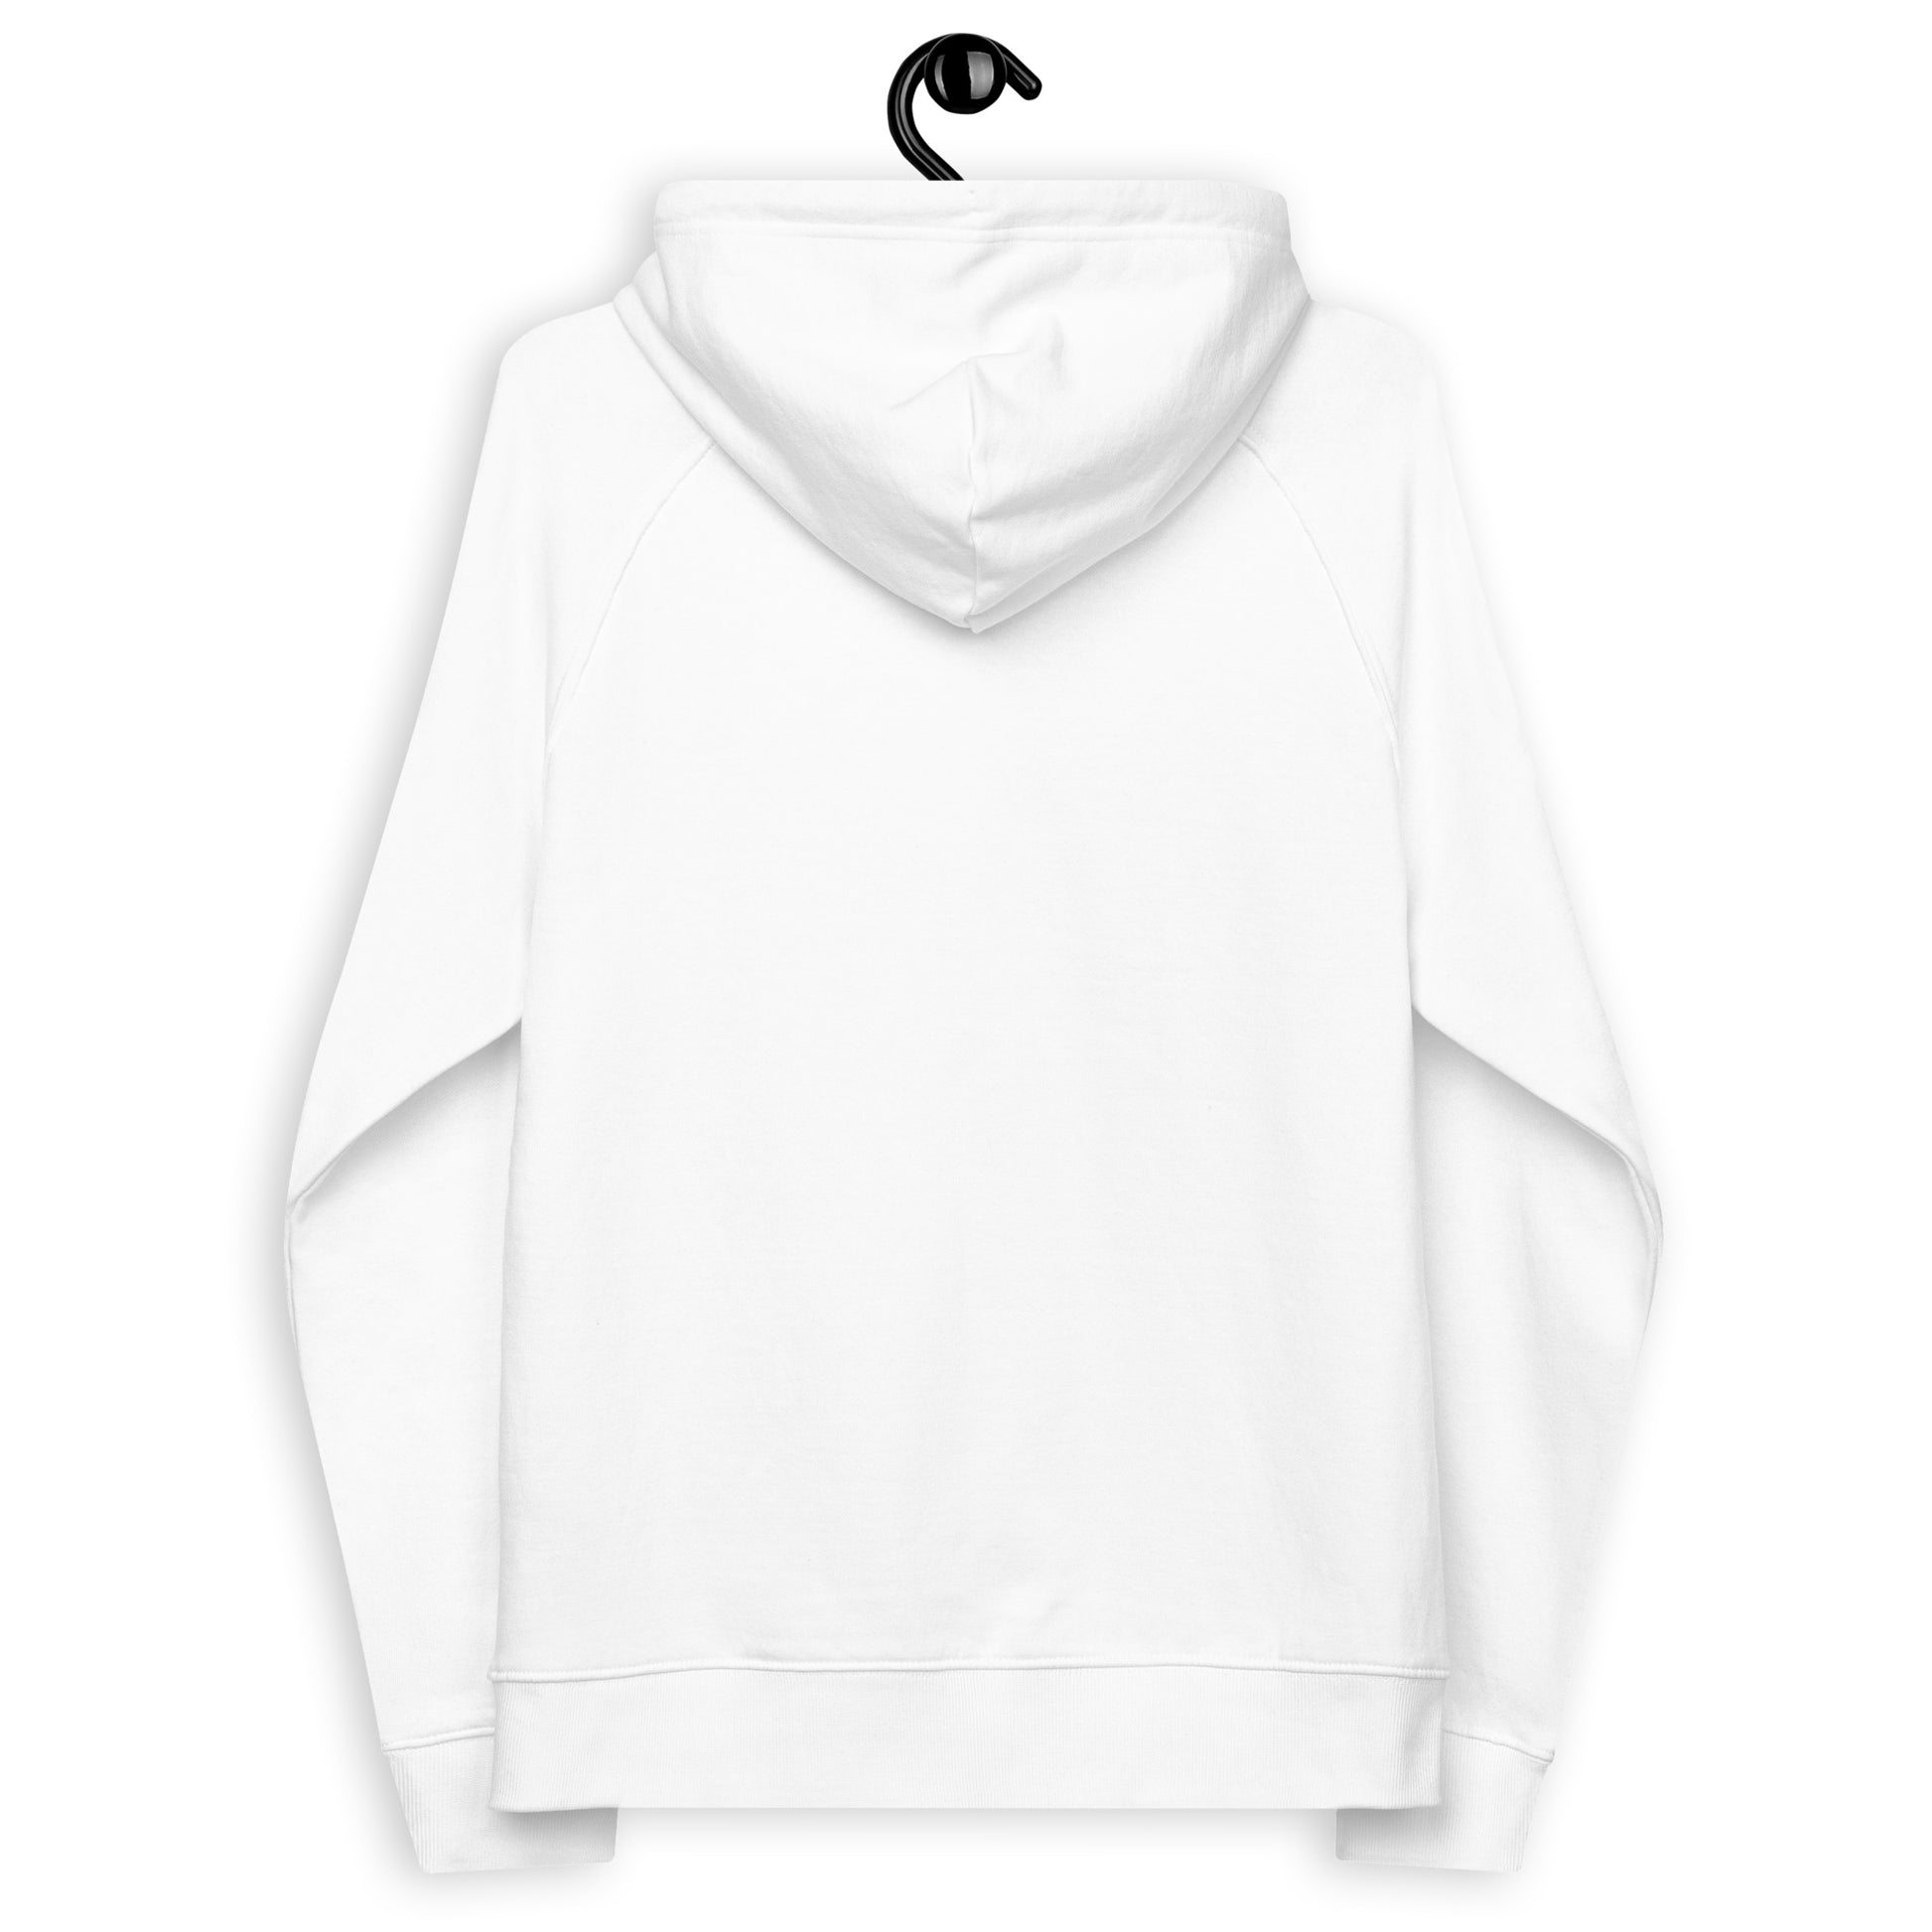 Monksee Music Premium white hoodie.